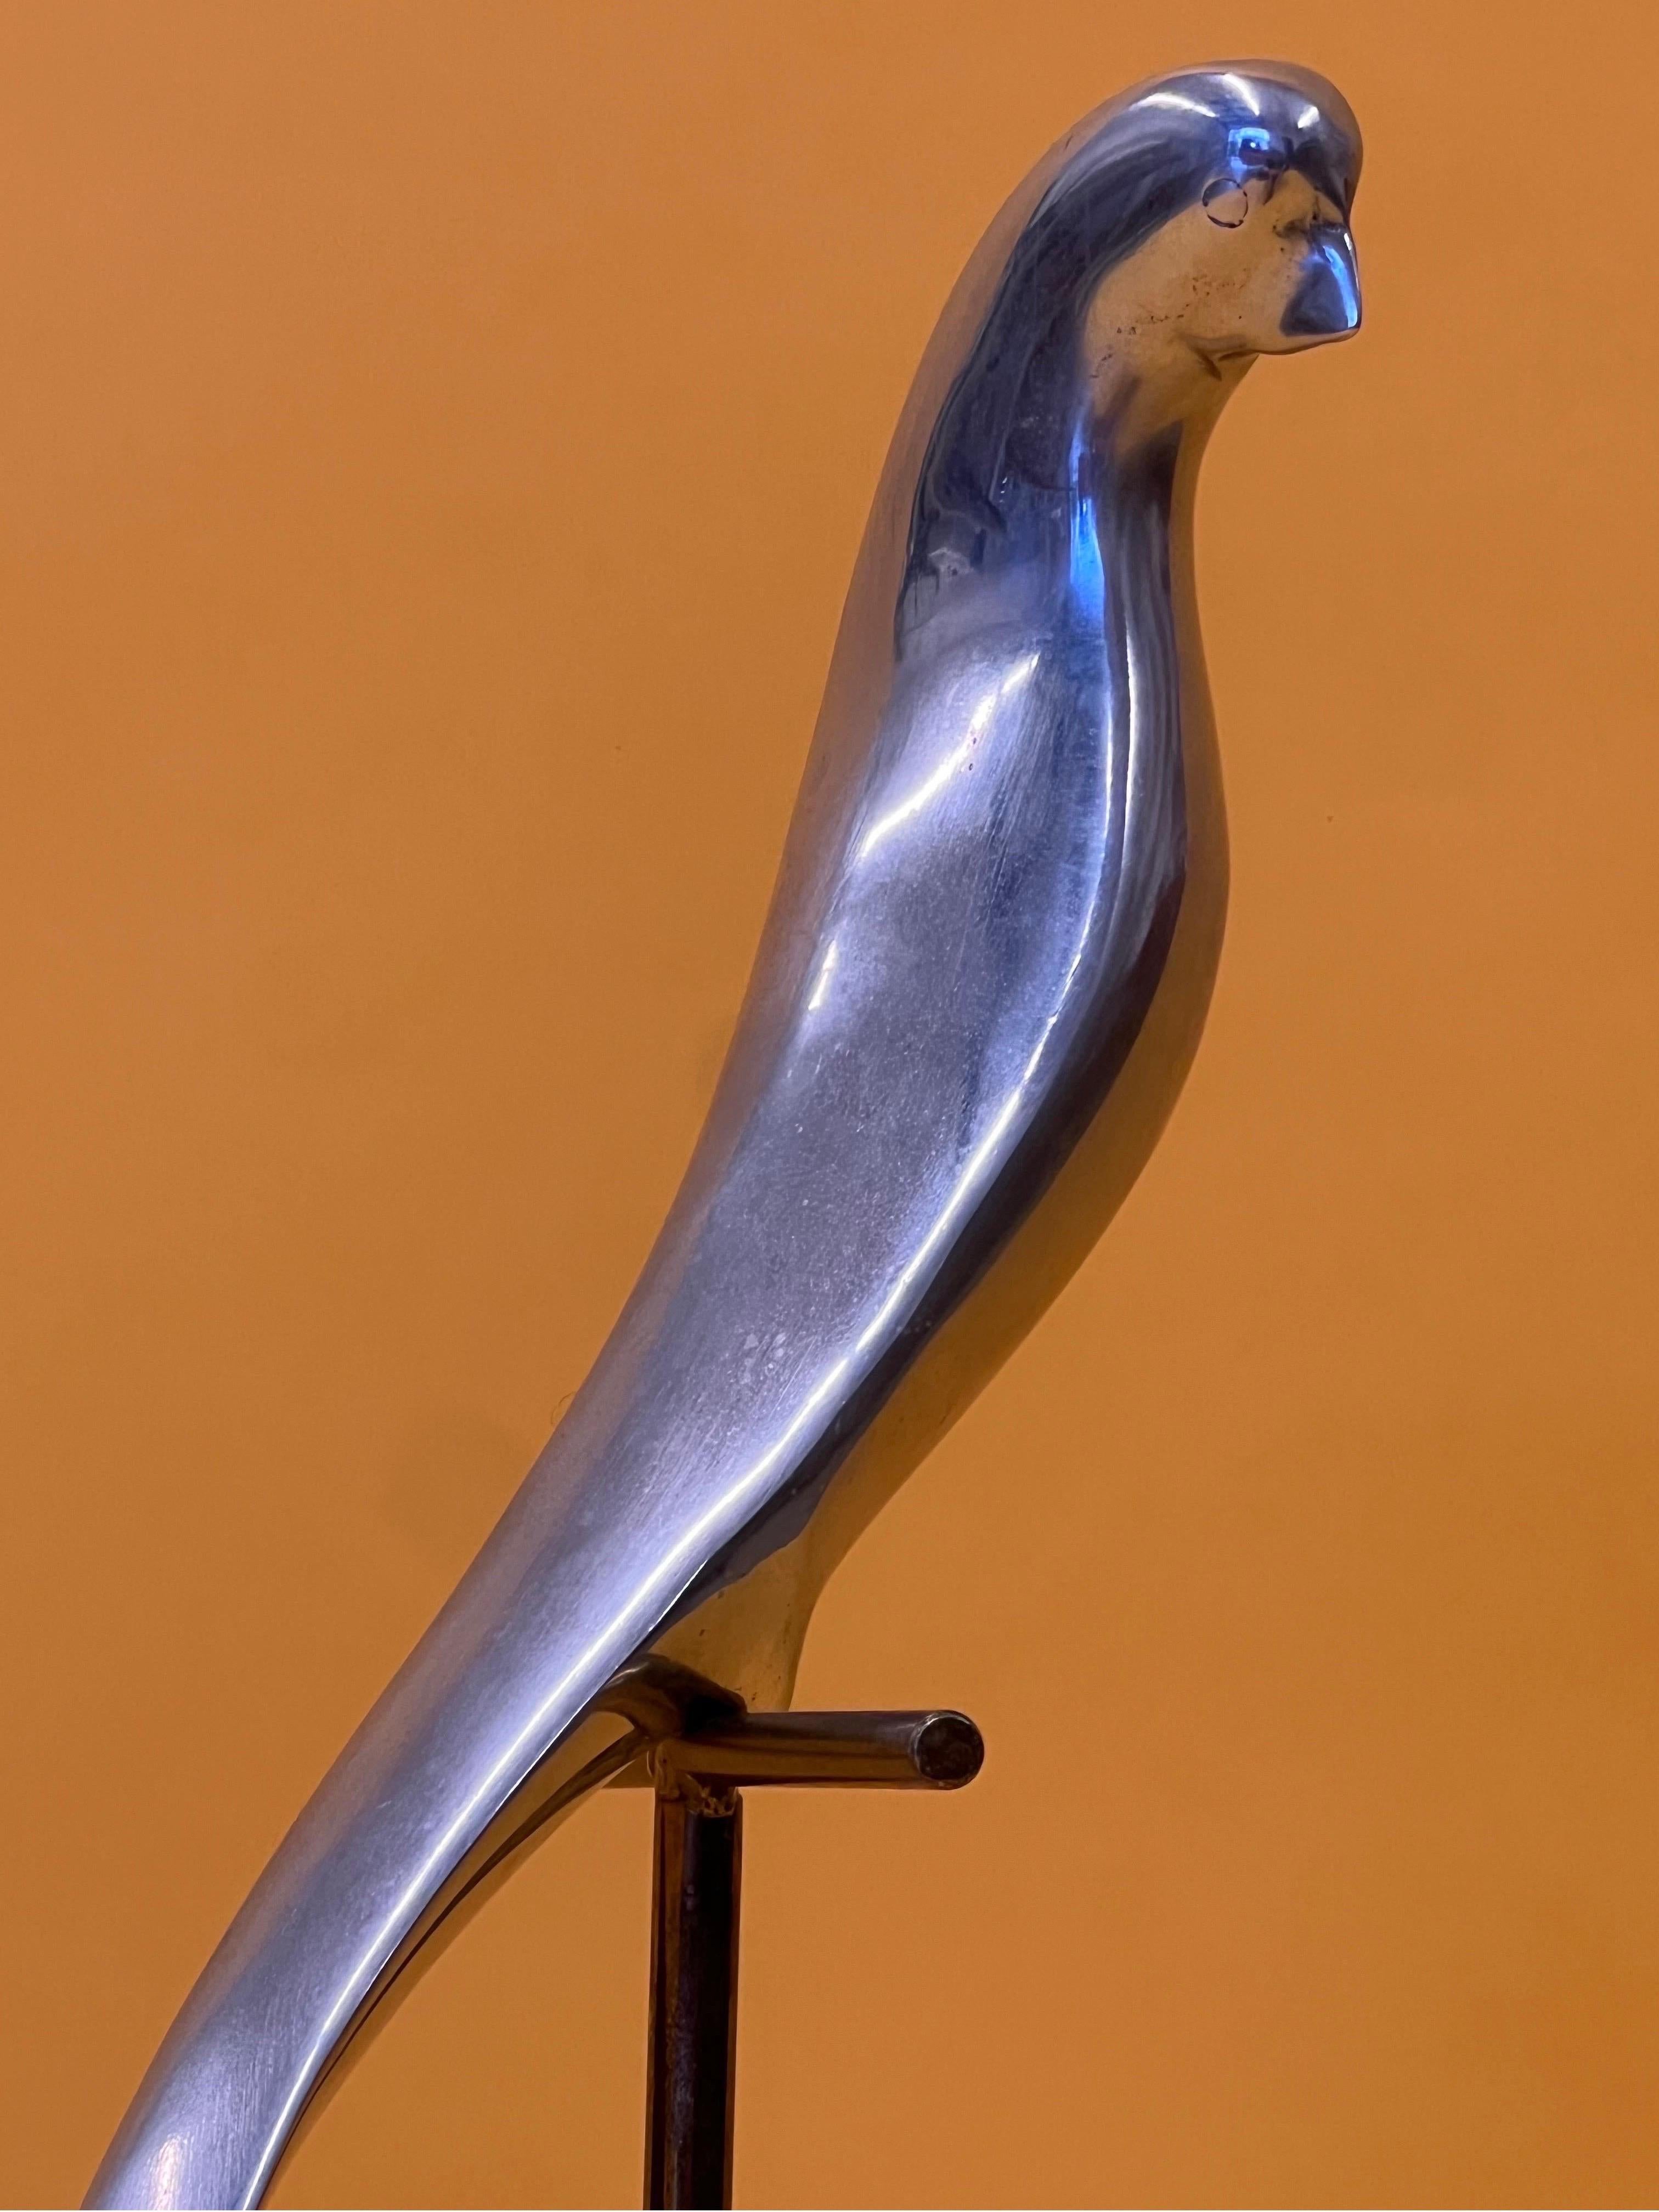 Skulptur von C. Jere aus den 1980er Jahren mit noch vorhandener schwacher Signatur. Der Papagei aus Aluminium sitzt auf einer goldenen Sitzstange. Der quadratische Sockel ist aus Marmor und mit einer Goldplatte versehen. Die Sitzstange mit Papagei